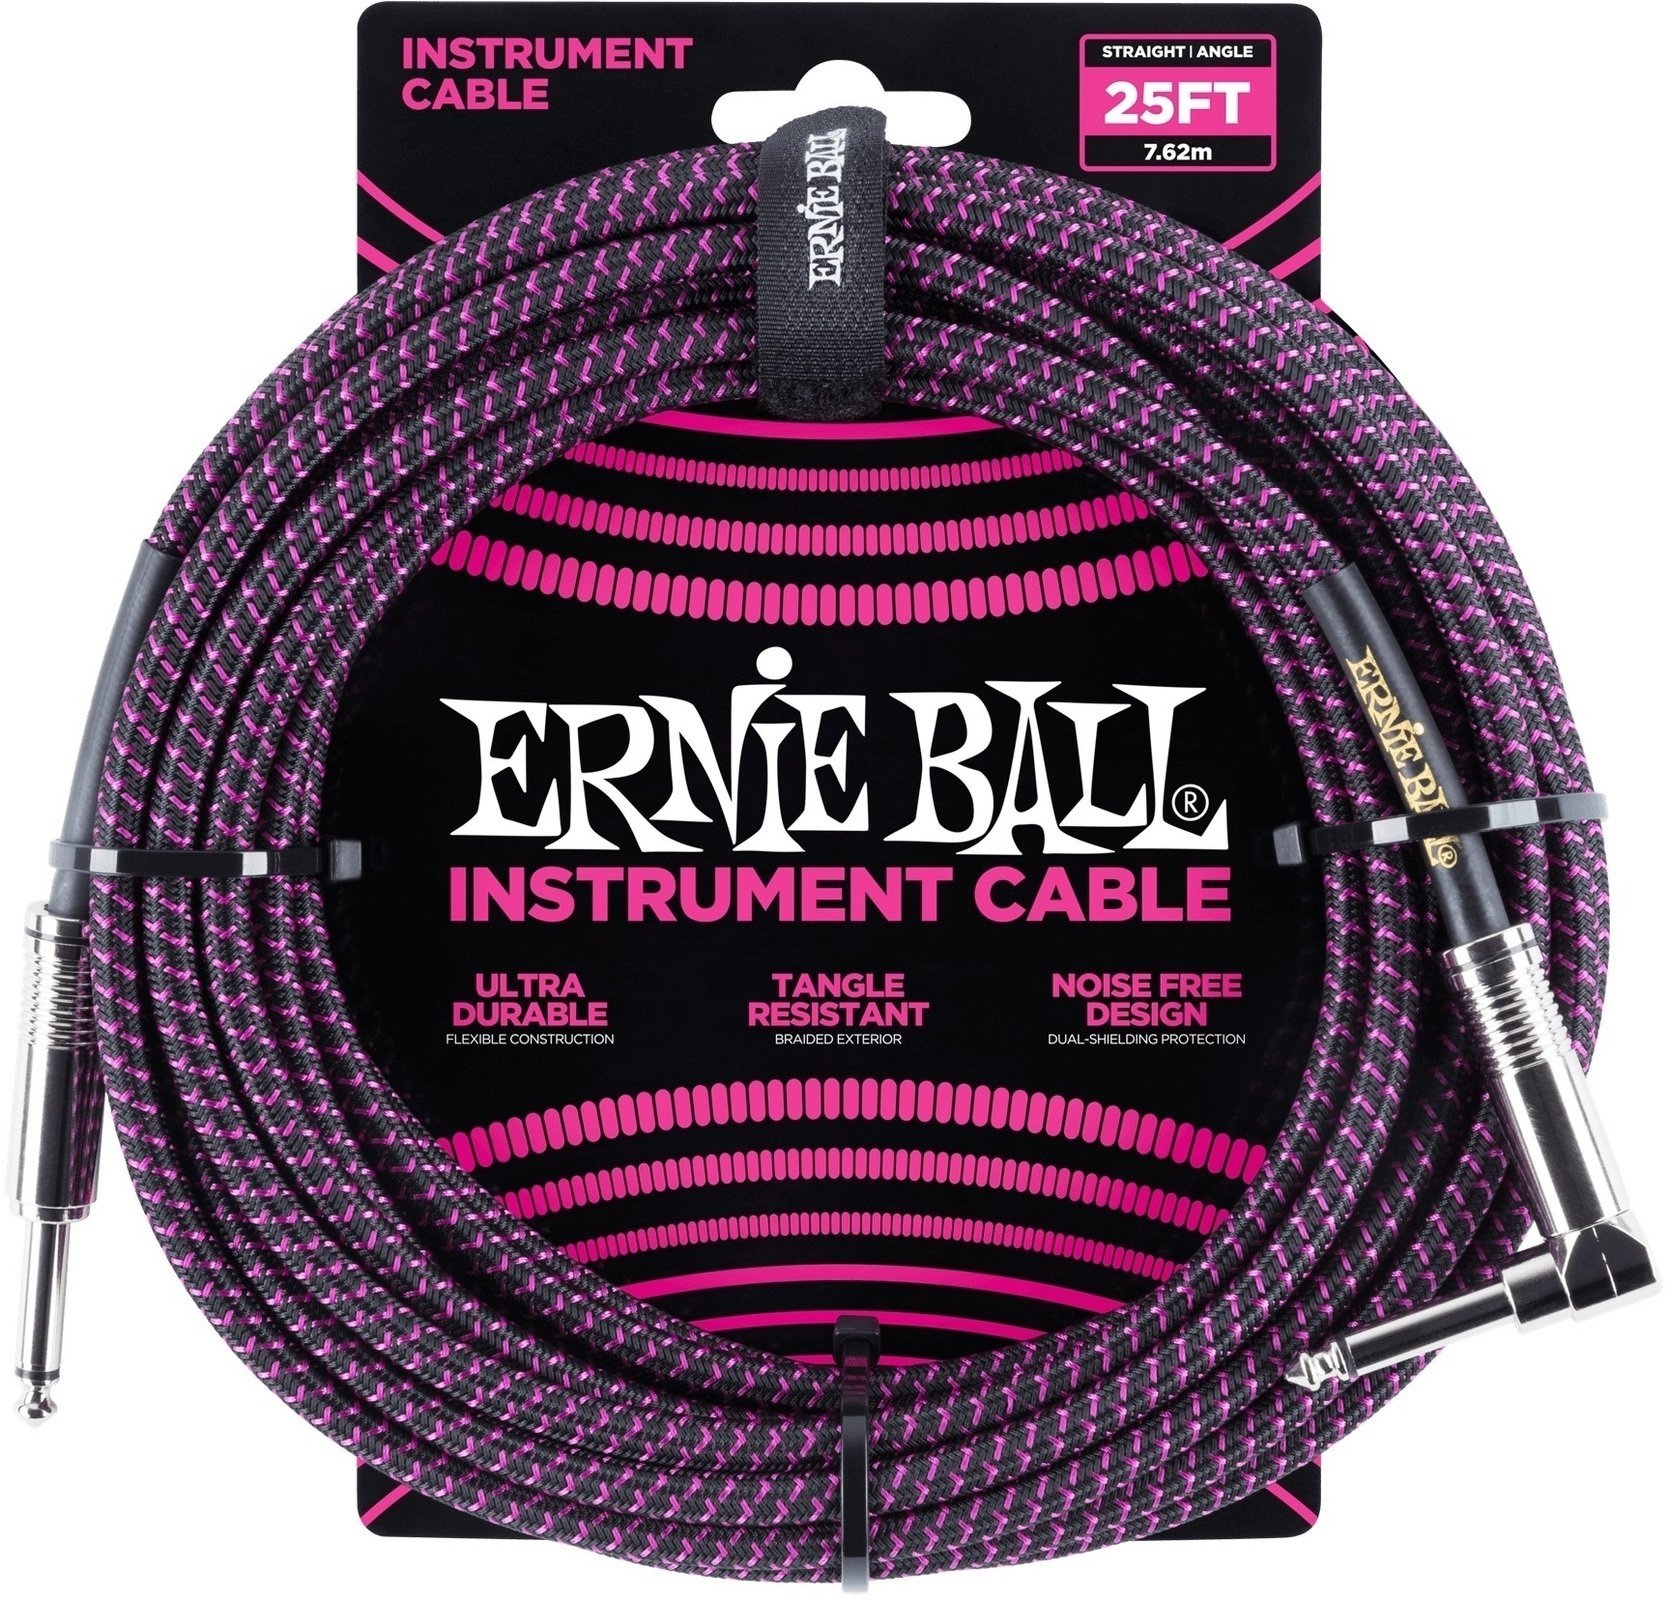 Καλώδιο Μουσικού Οργάνου Ernie Ball P06068 Μαύρο χρώμα-Μωβ 7,5 m Ίσιος - Με γωνία